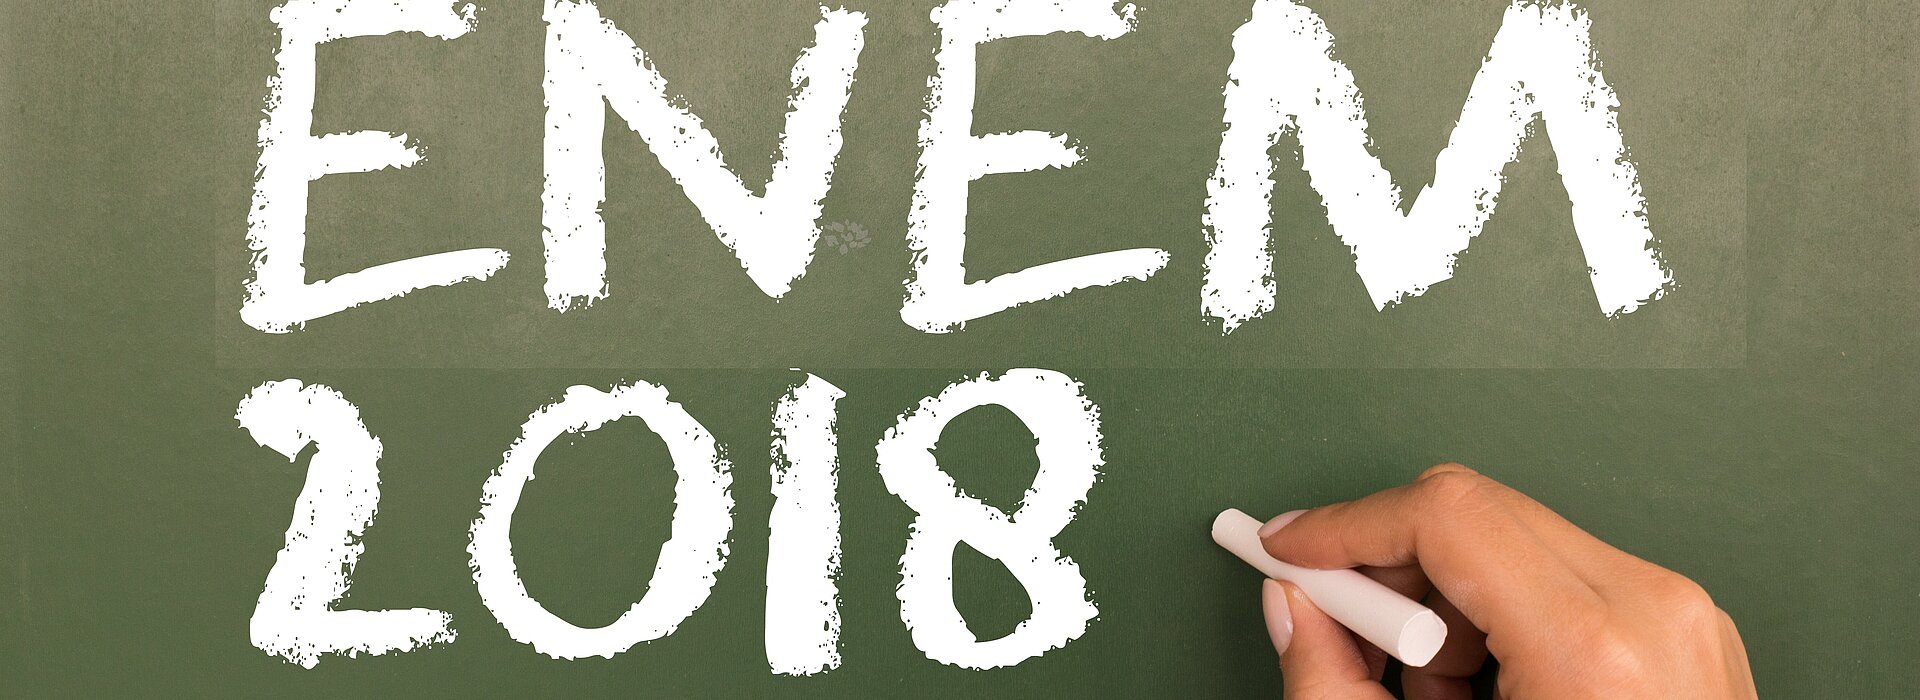 Mão segurando giz com a inscrição "Enem 2018" no quadro negro